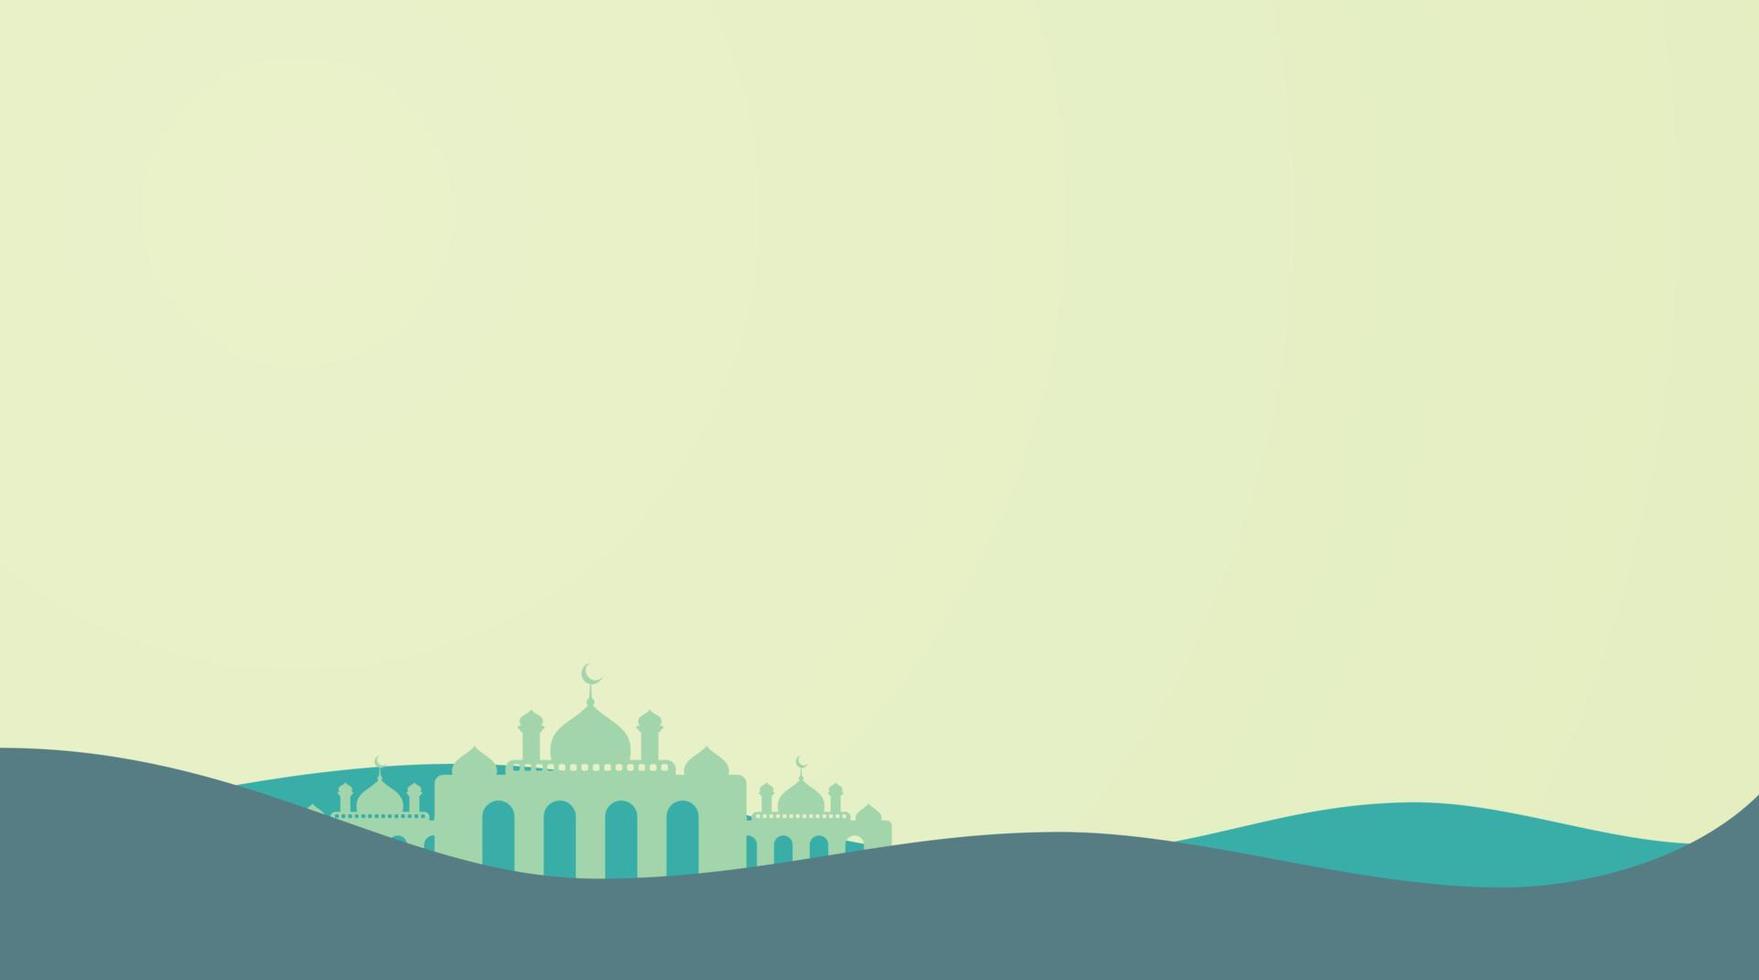 islamischer hintergrund mit moscheevektorillustration vektor